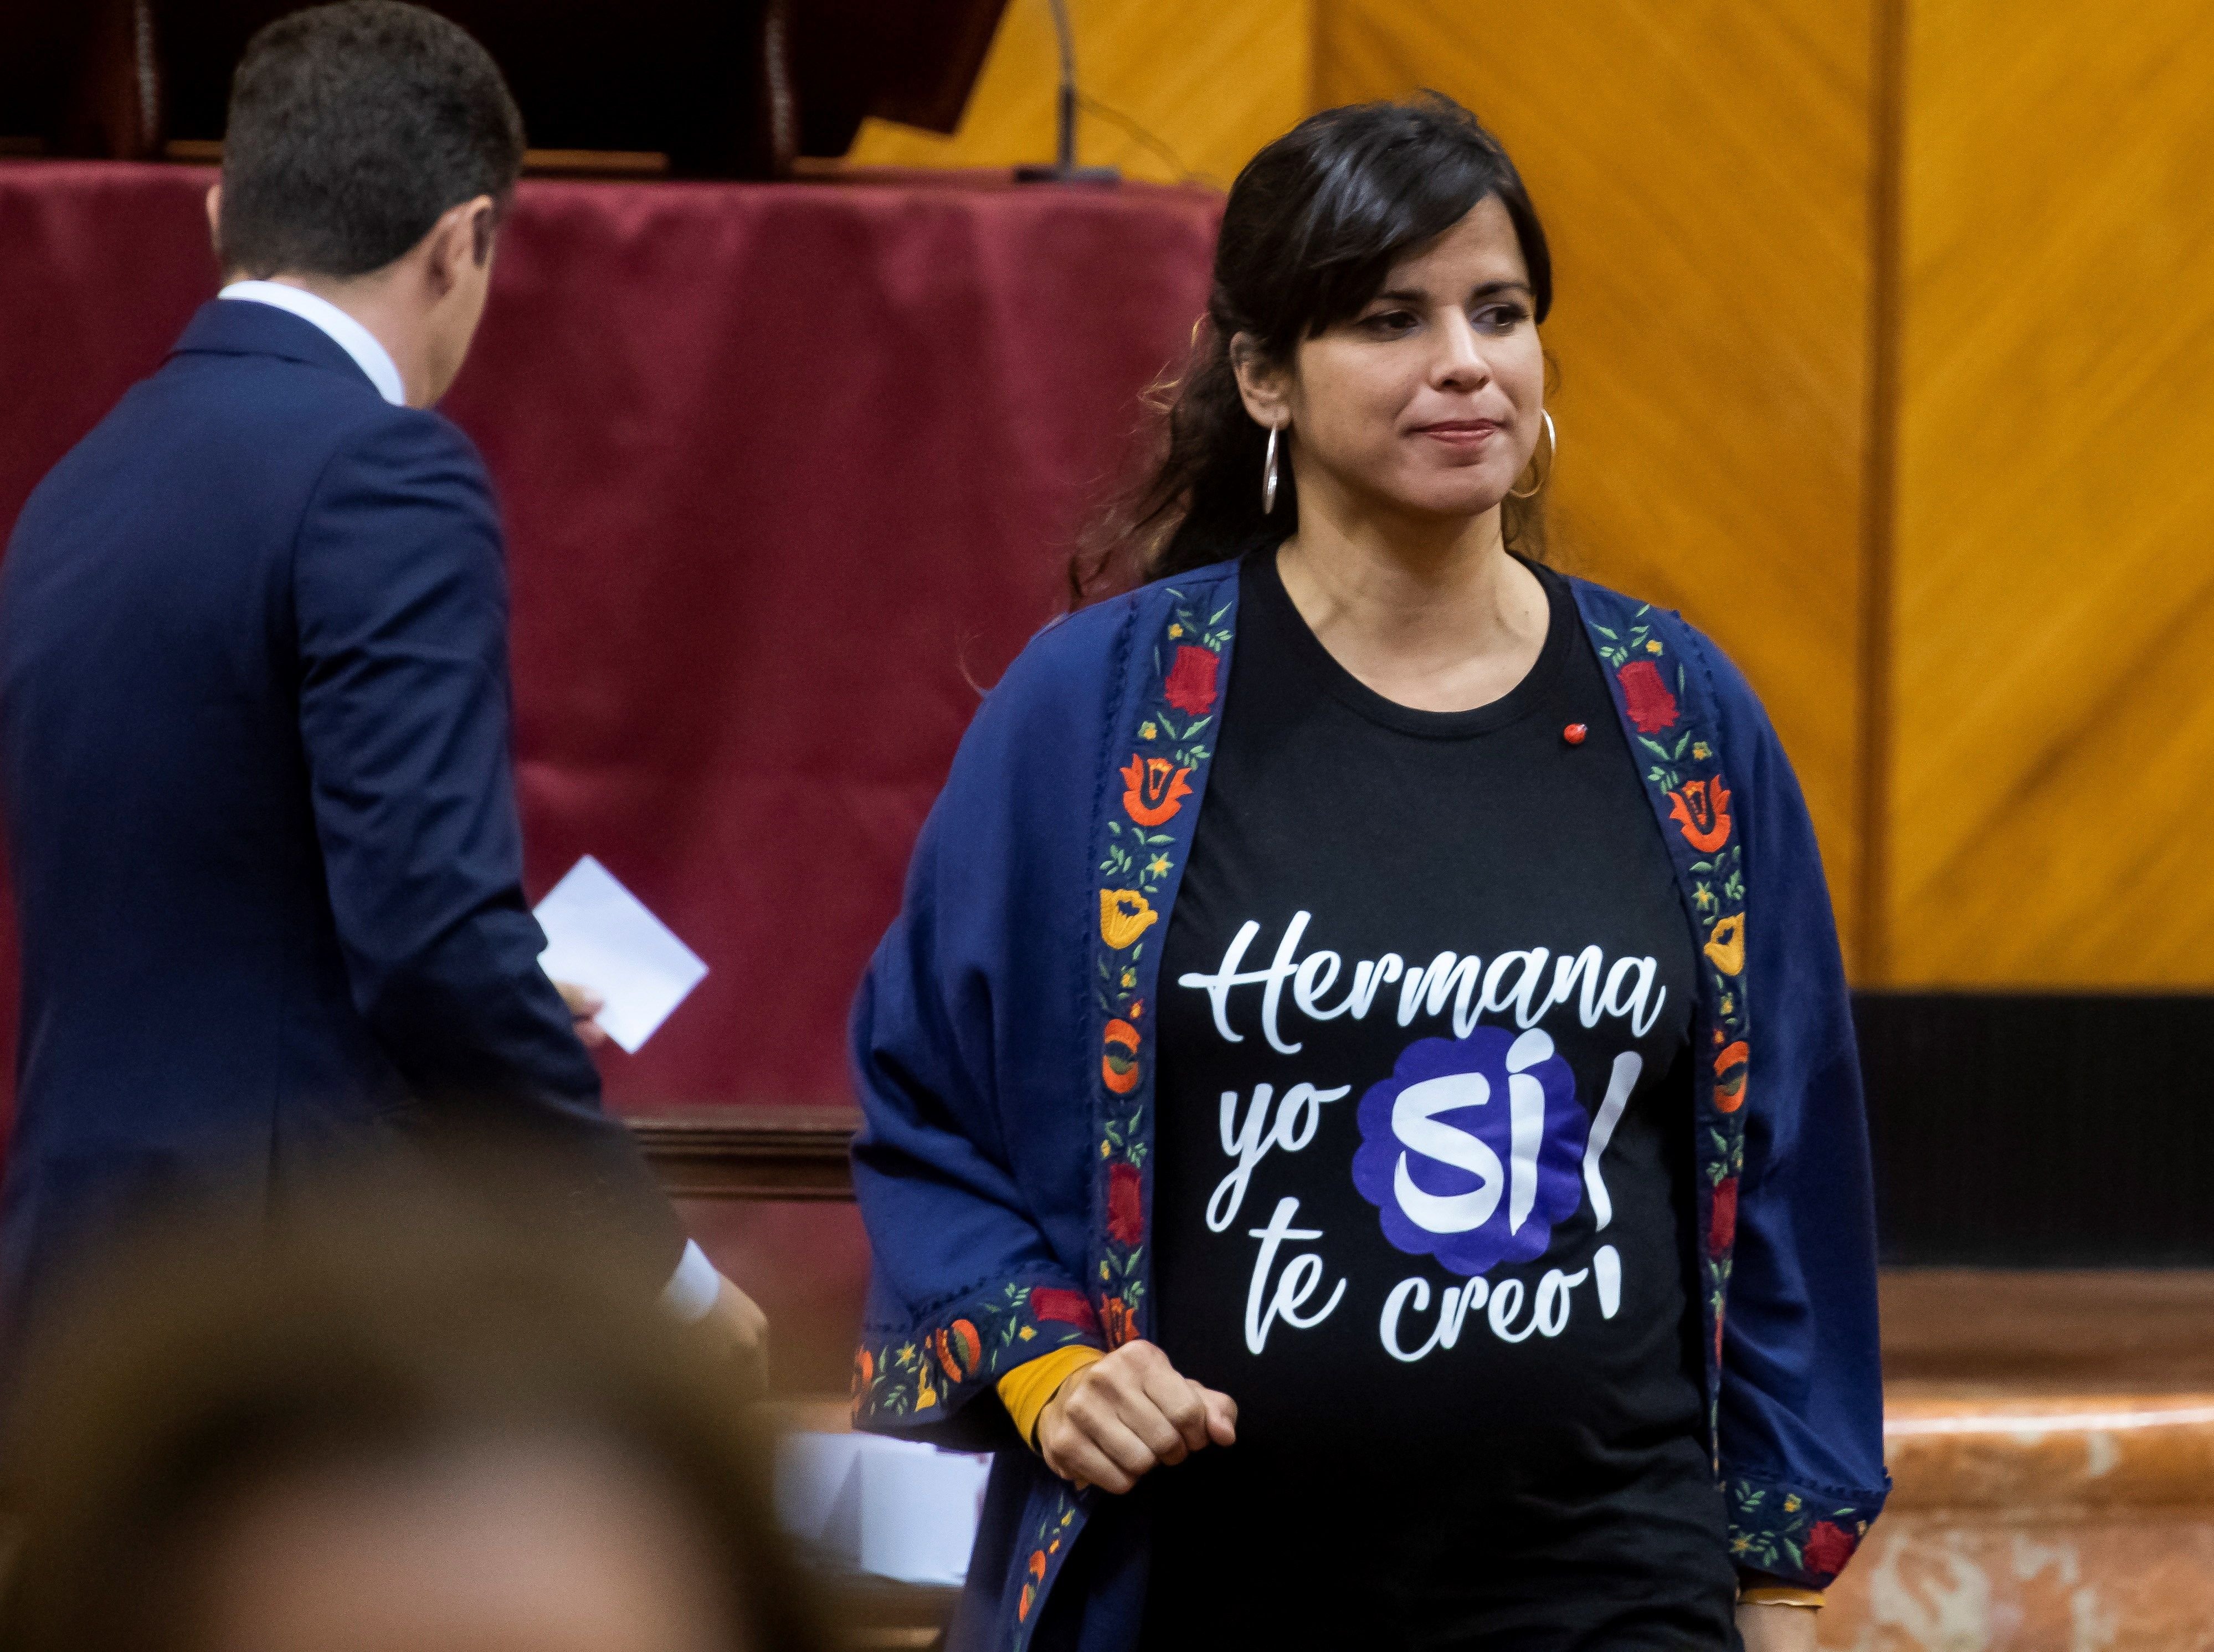 Podemos de Andalucía expulsa del grupo a Teresa Rodríguez, de baja maternal